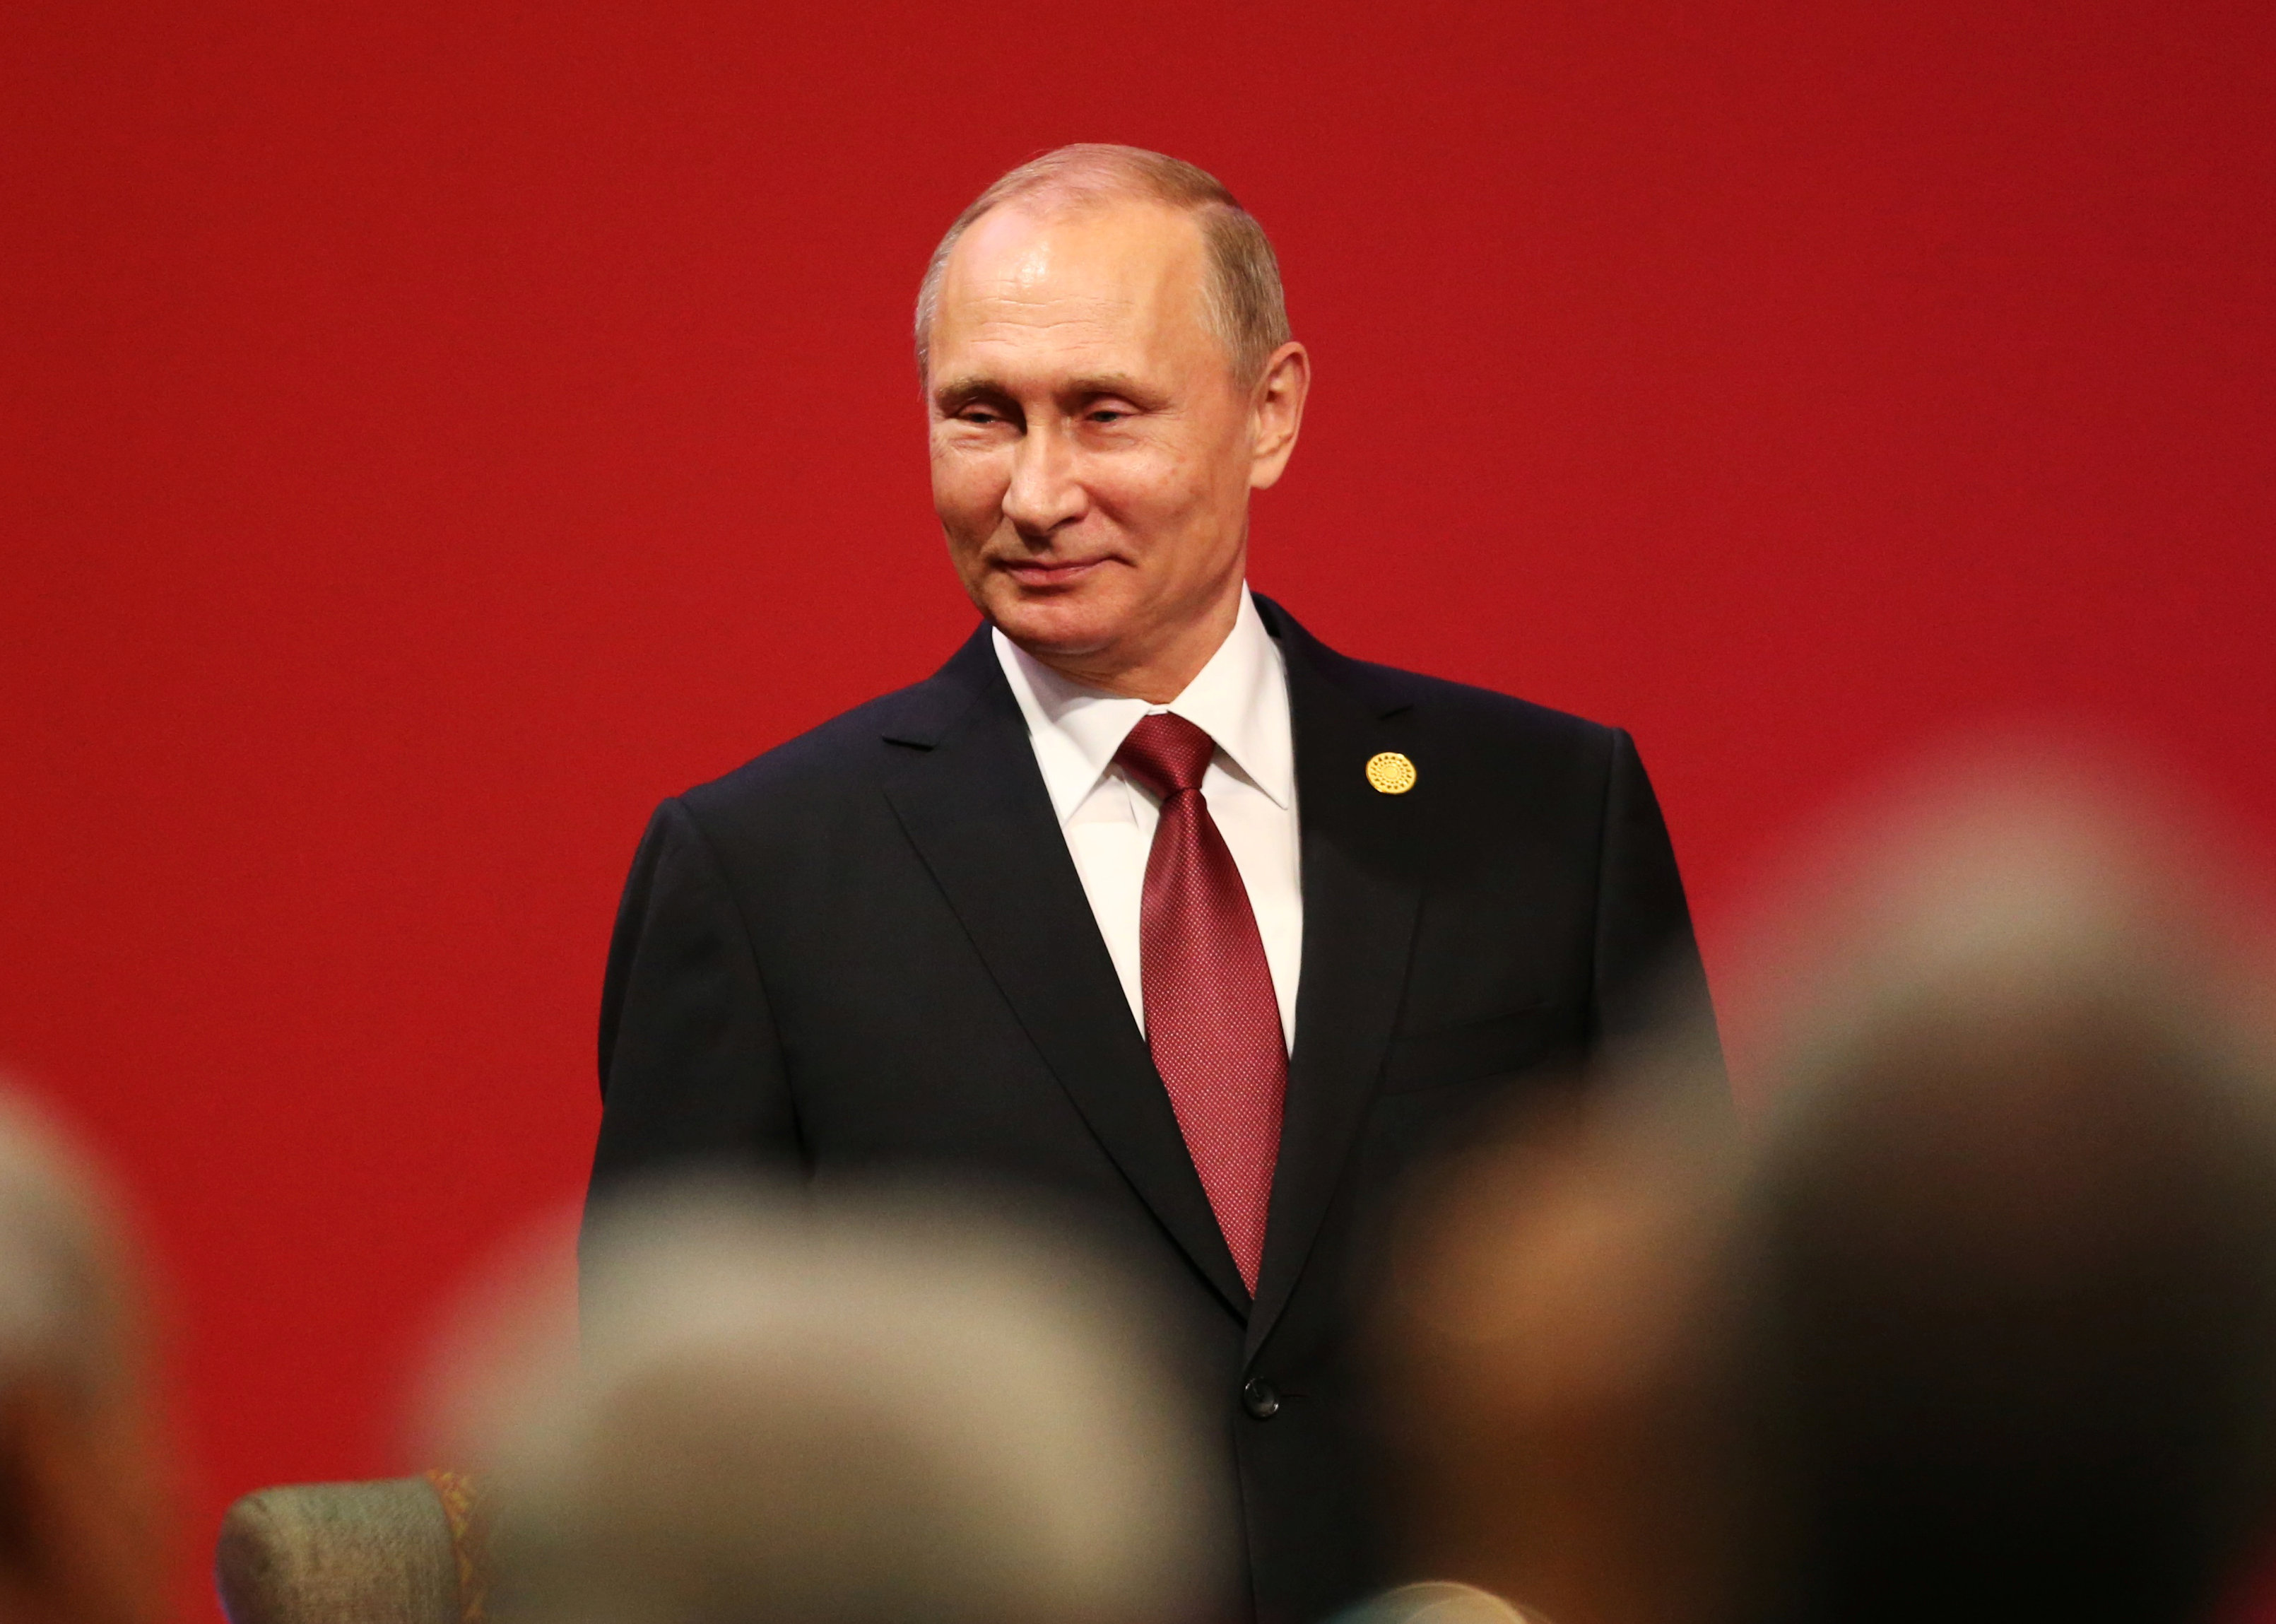 Putin aseguró que es muy temprano para hablar sobre una reunión con Donald Trump.